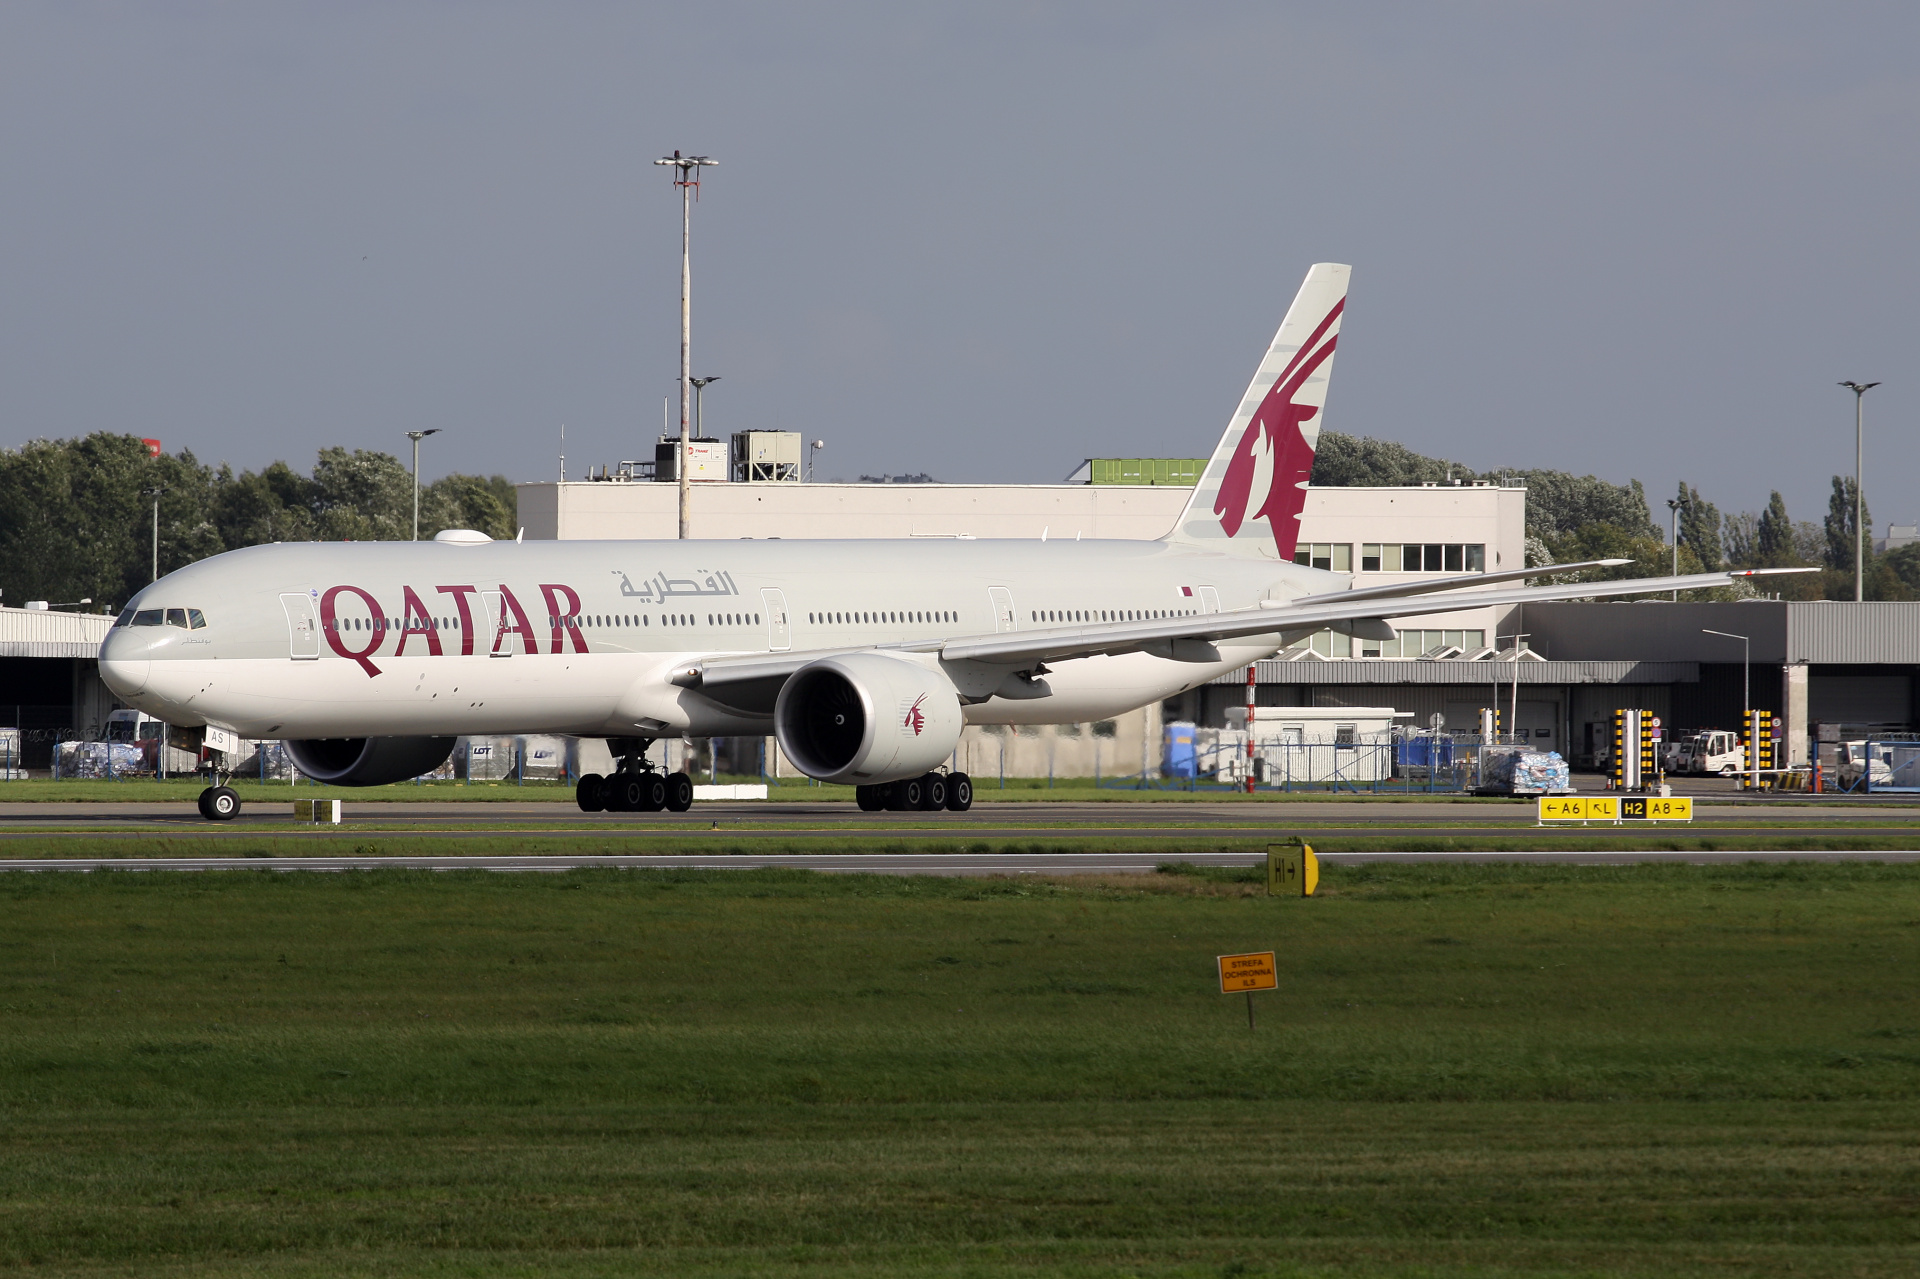 A7-BAS (Aircraft » EPWA Spotting » Boeing 777-300ER » Qatar Airways)